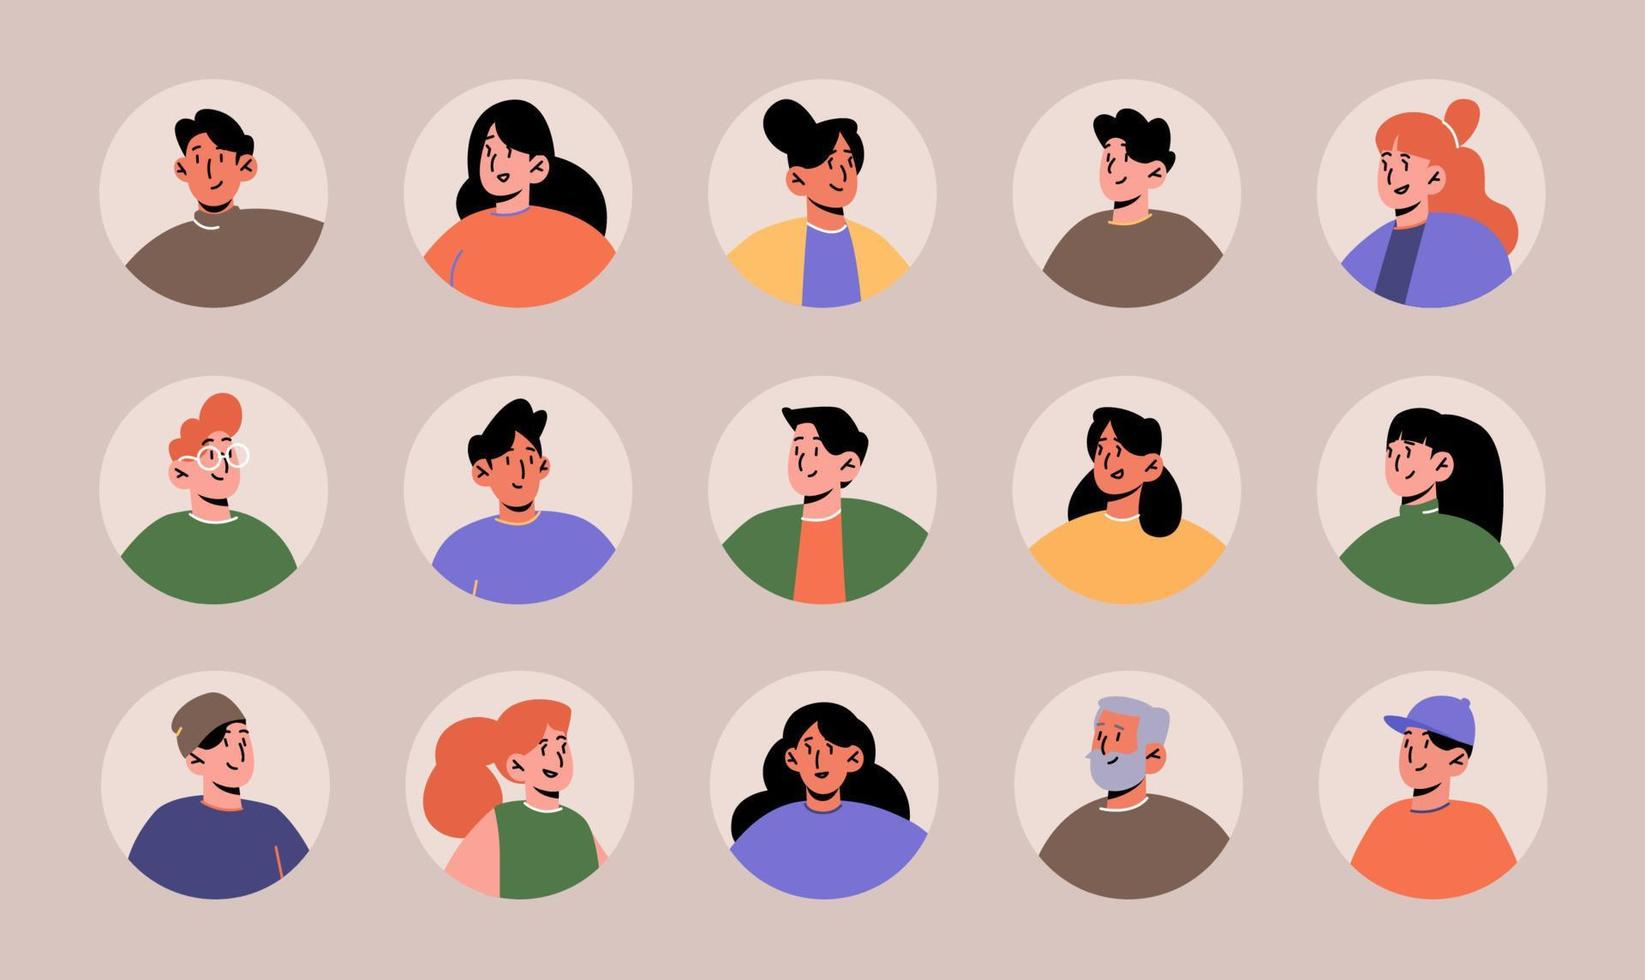 Avatare mit Gesichtern für soziale Medien vektor